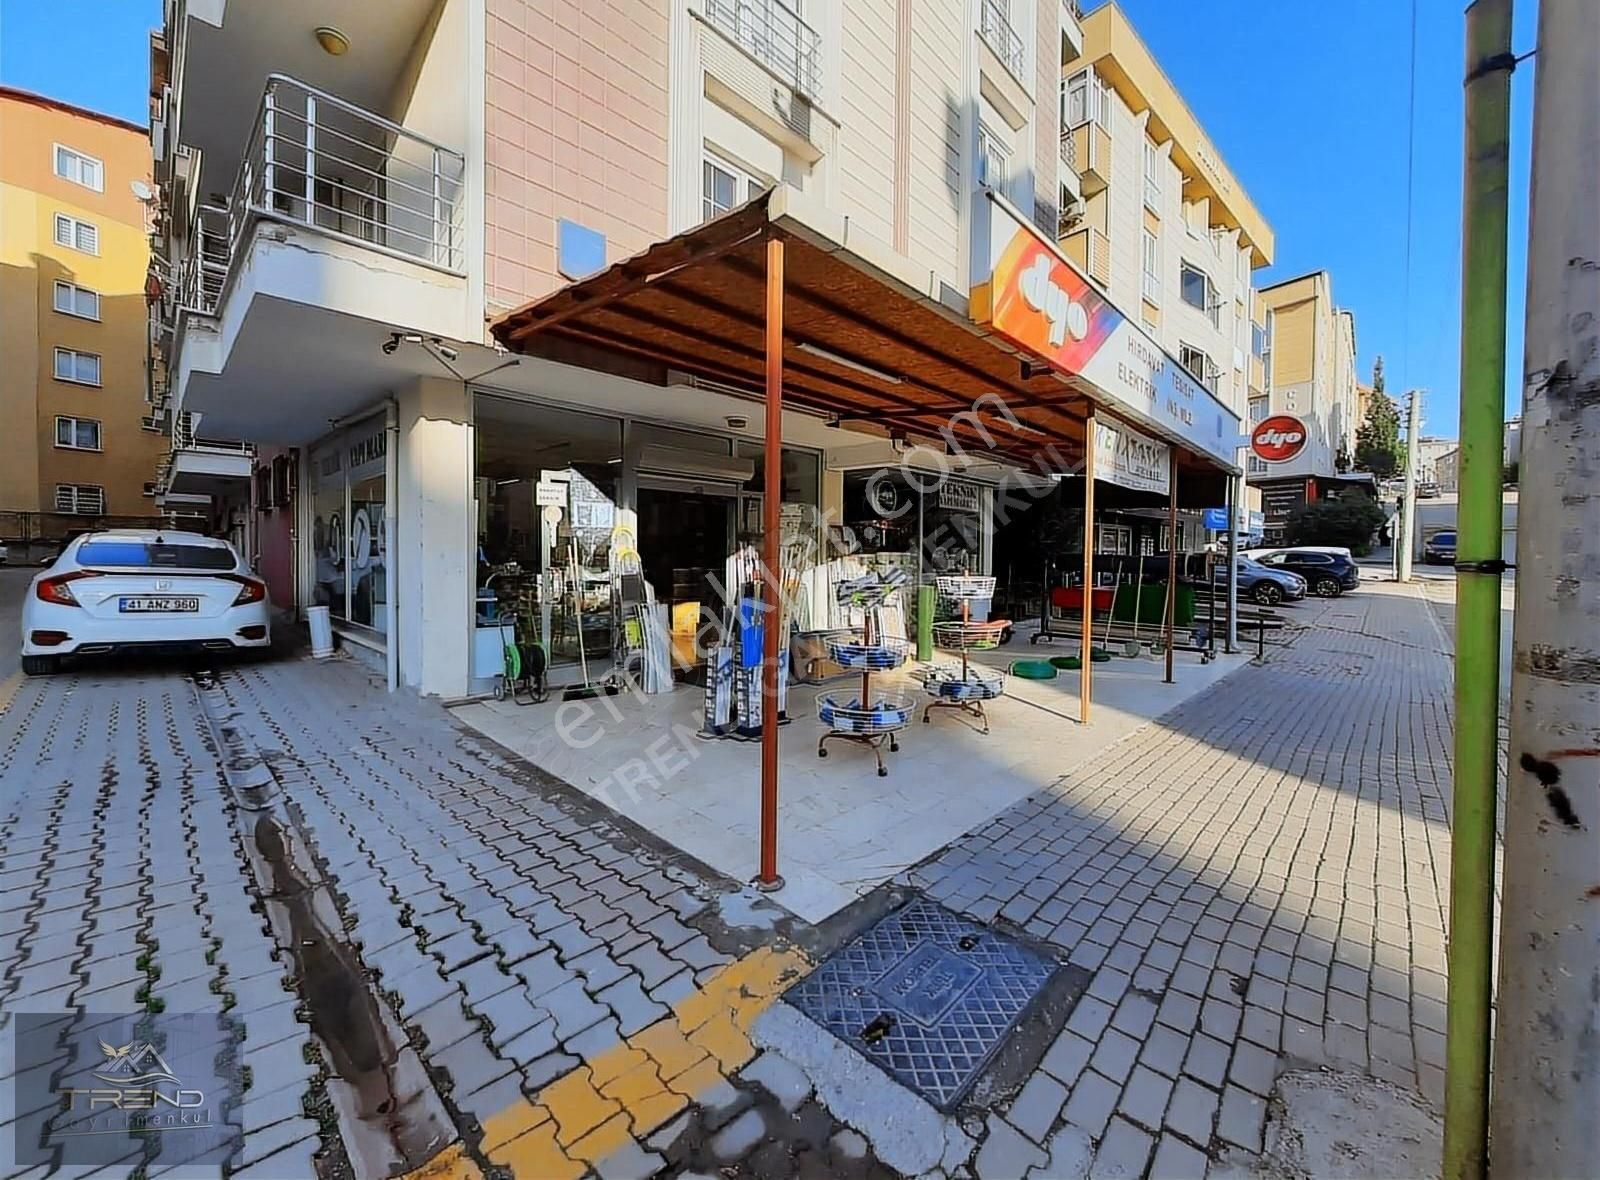 Gebze Köşklü Çeşme Satılık Dükkan & Mağaza MERKEZİ YERDE DEPOLU 200 m2 FIRSAT DÜKKAN..!